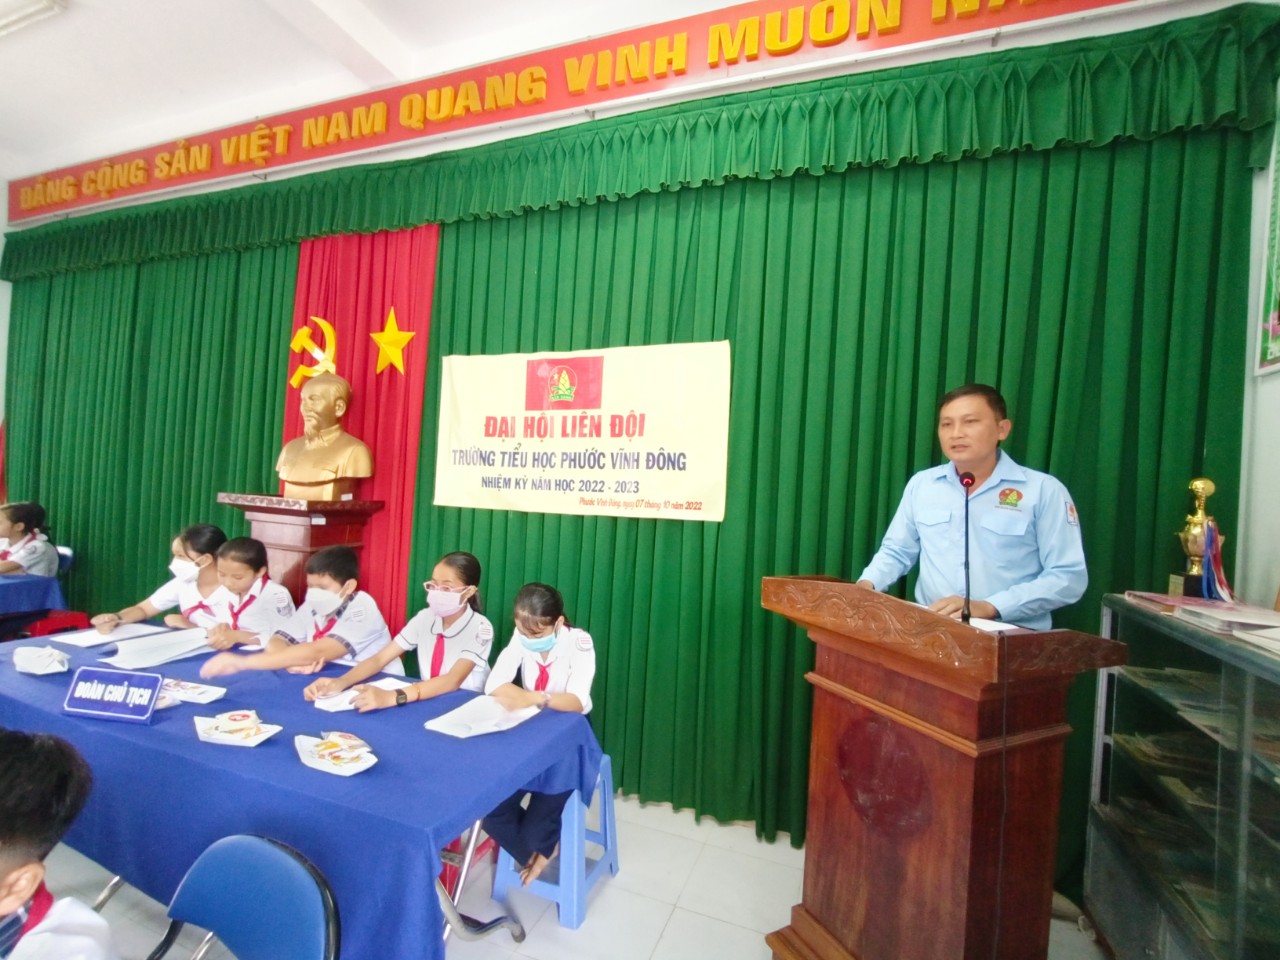 Đ/c Trần Văn Thuấn Chủ tịch Hội đồng Đội phát biểu chỉ đạo Đại hội